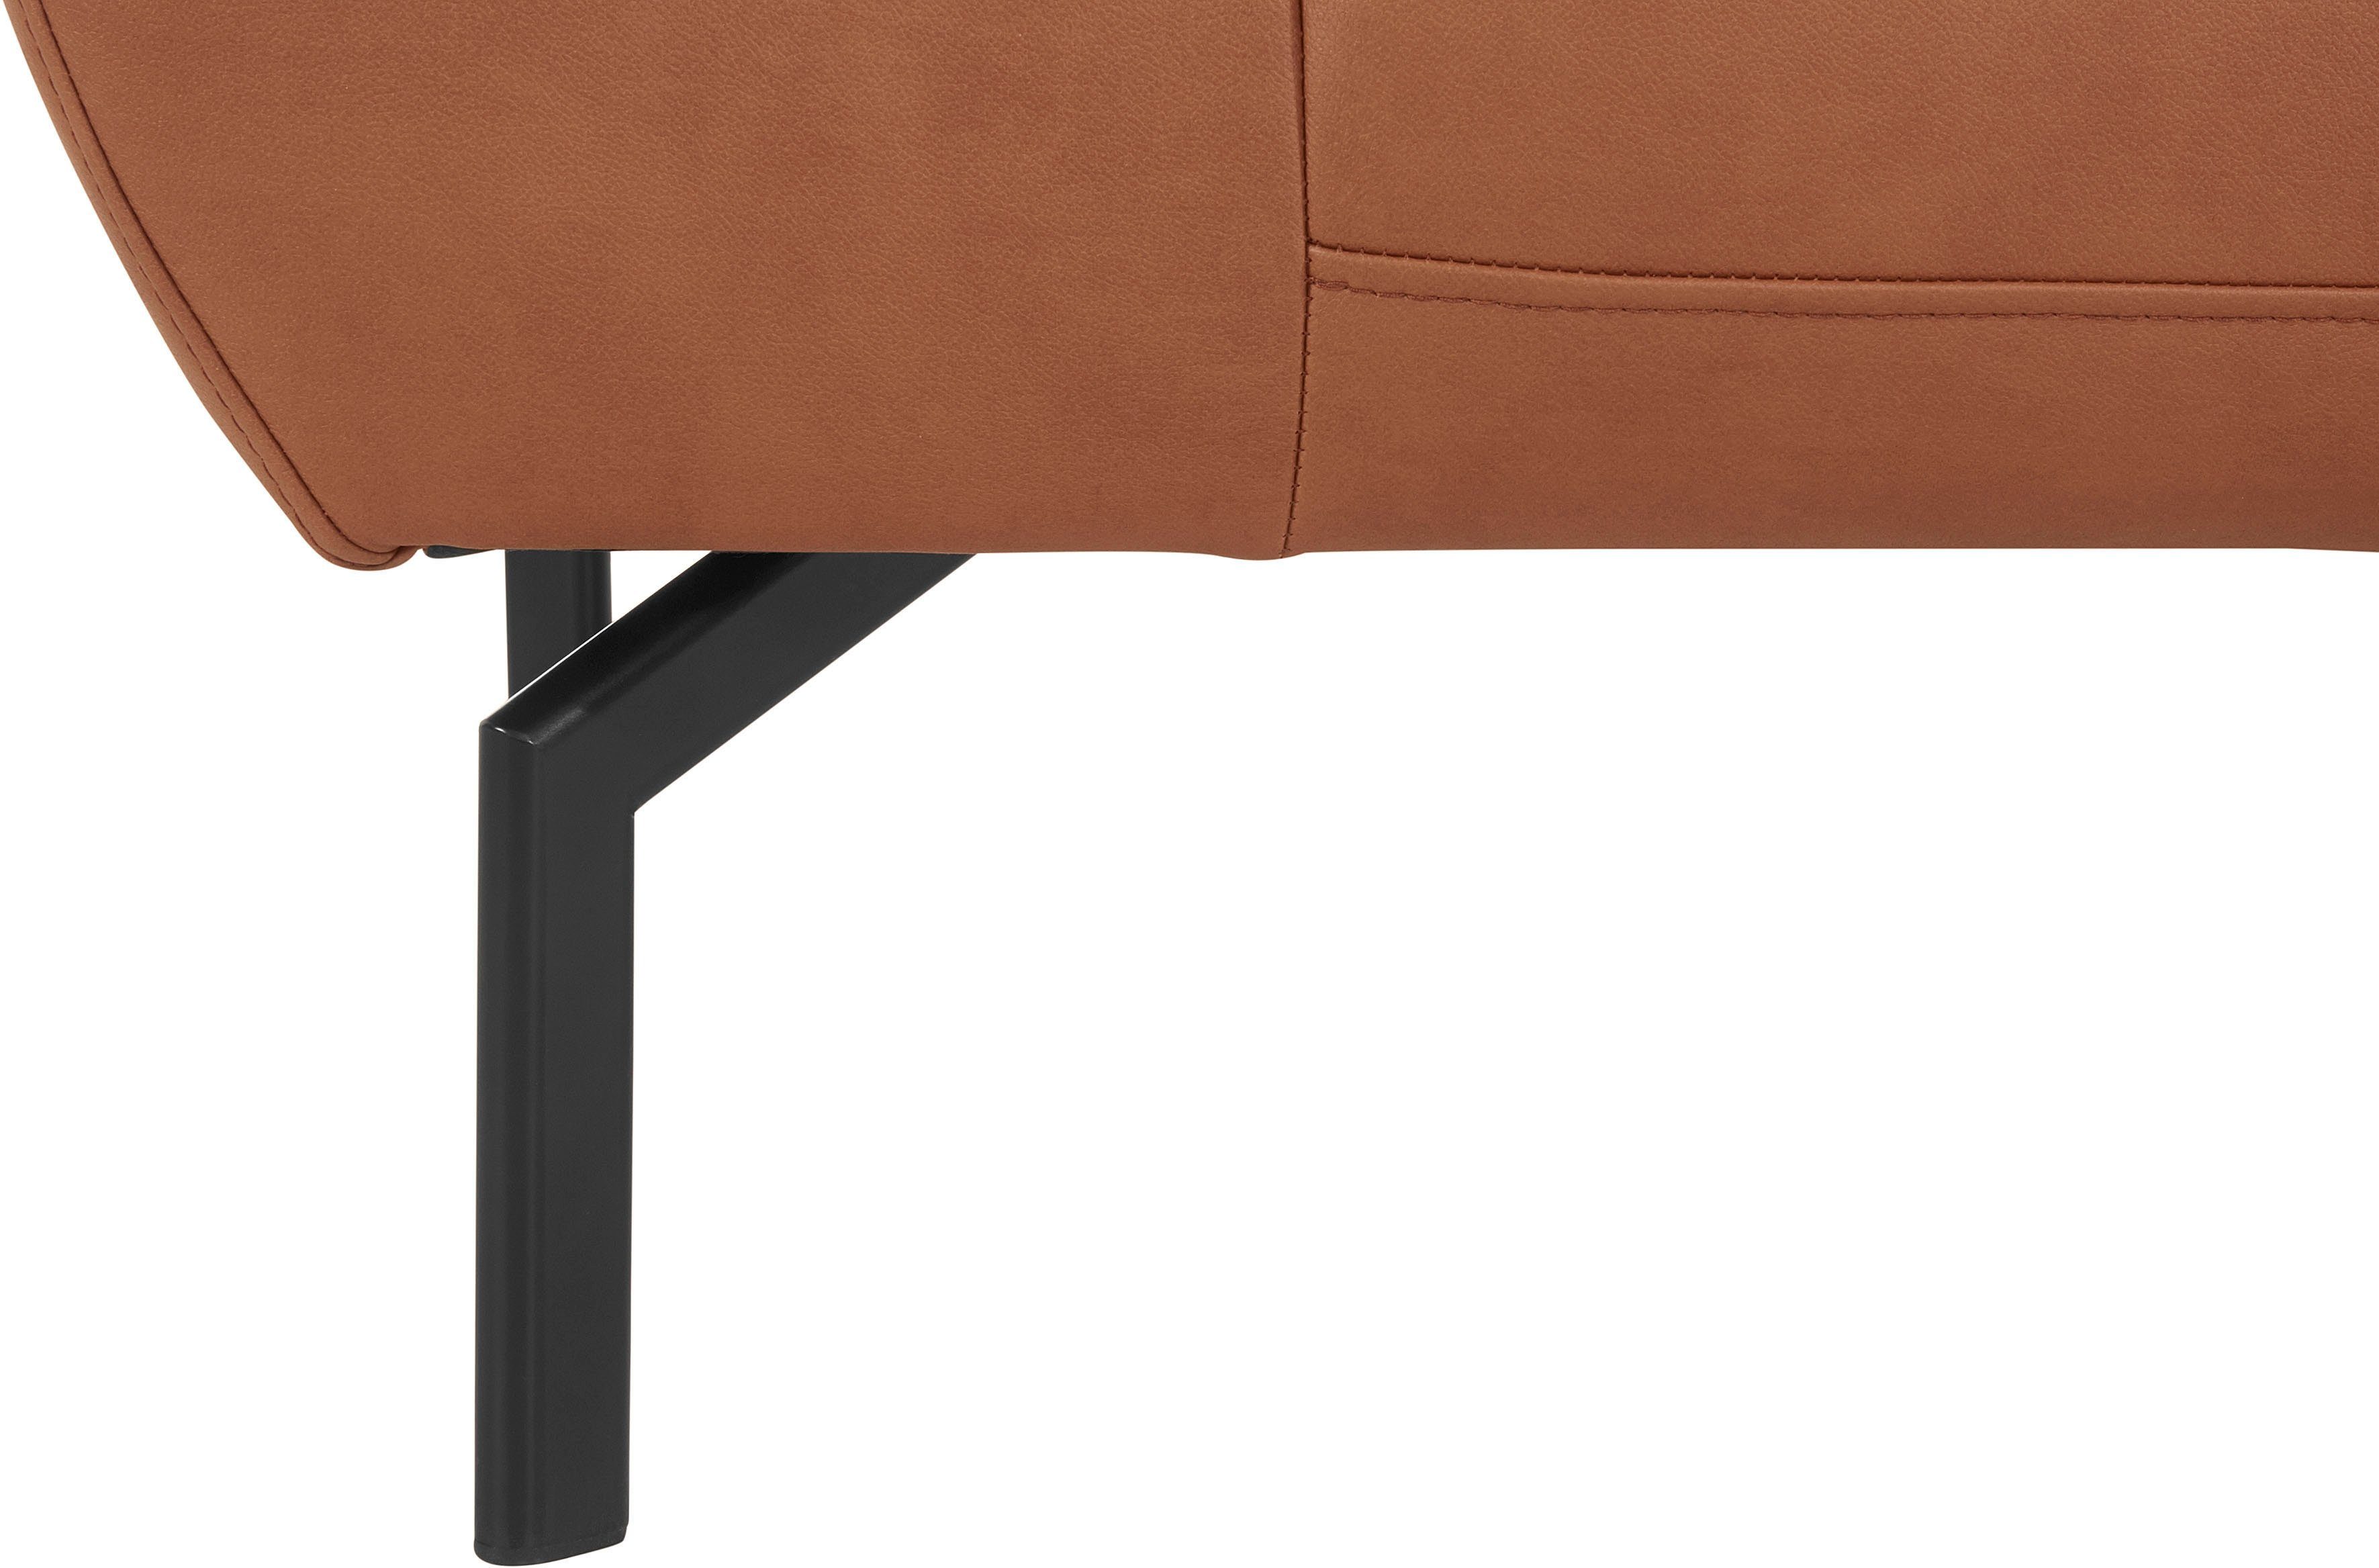 Places of Style mit Lederoptik Luxus, Luxus-Microfaser wahlweise in 2-Sitzer Rückenverstellung, Trapino